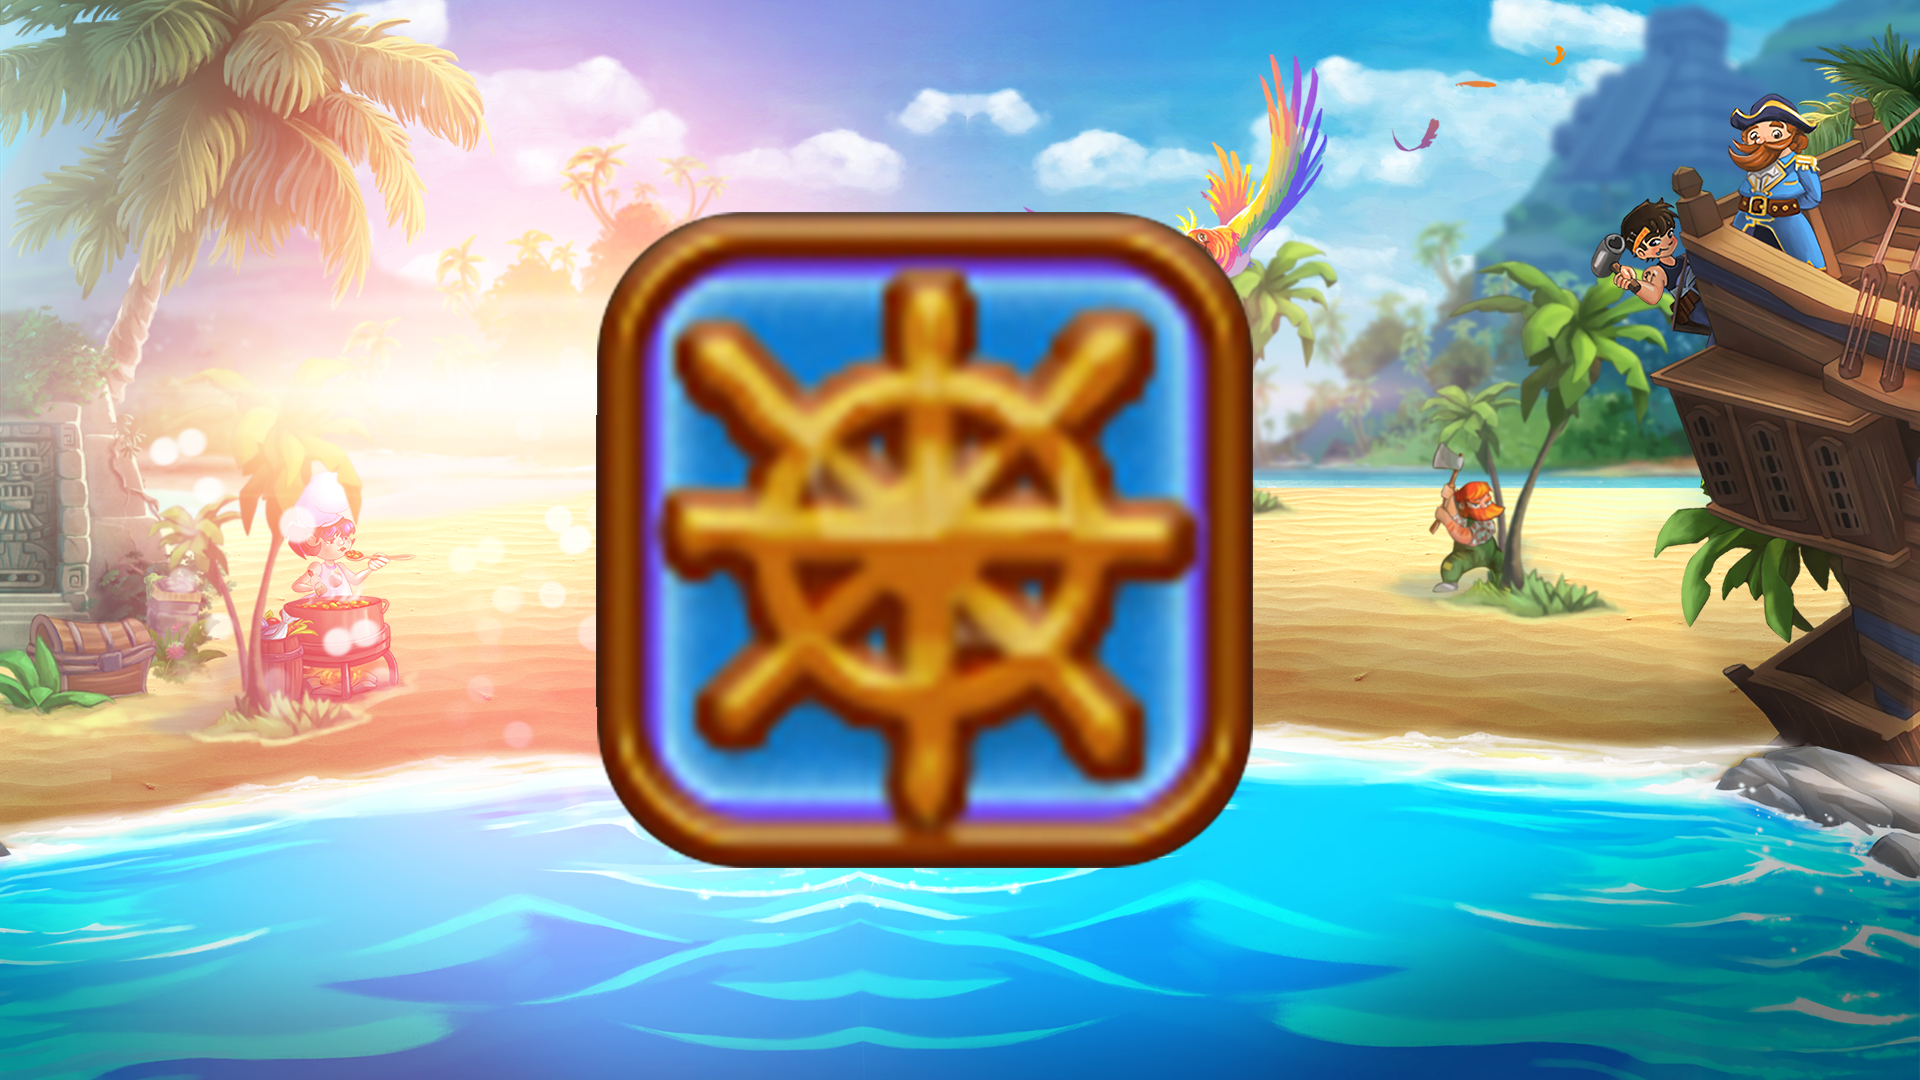 Icon for Ship Ahoy!